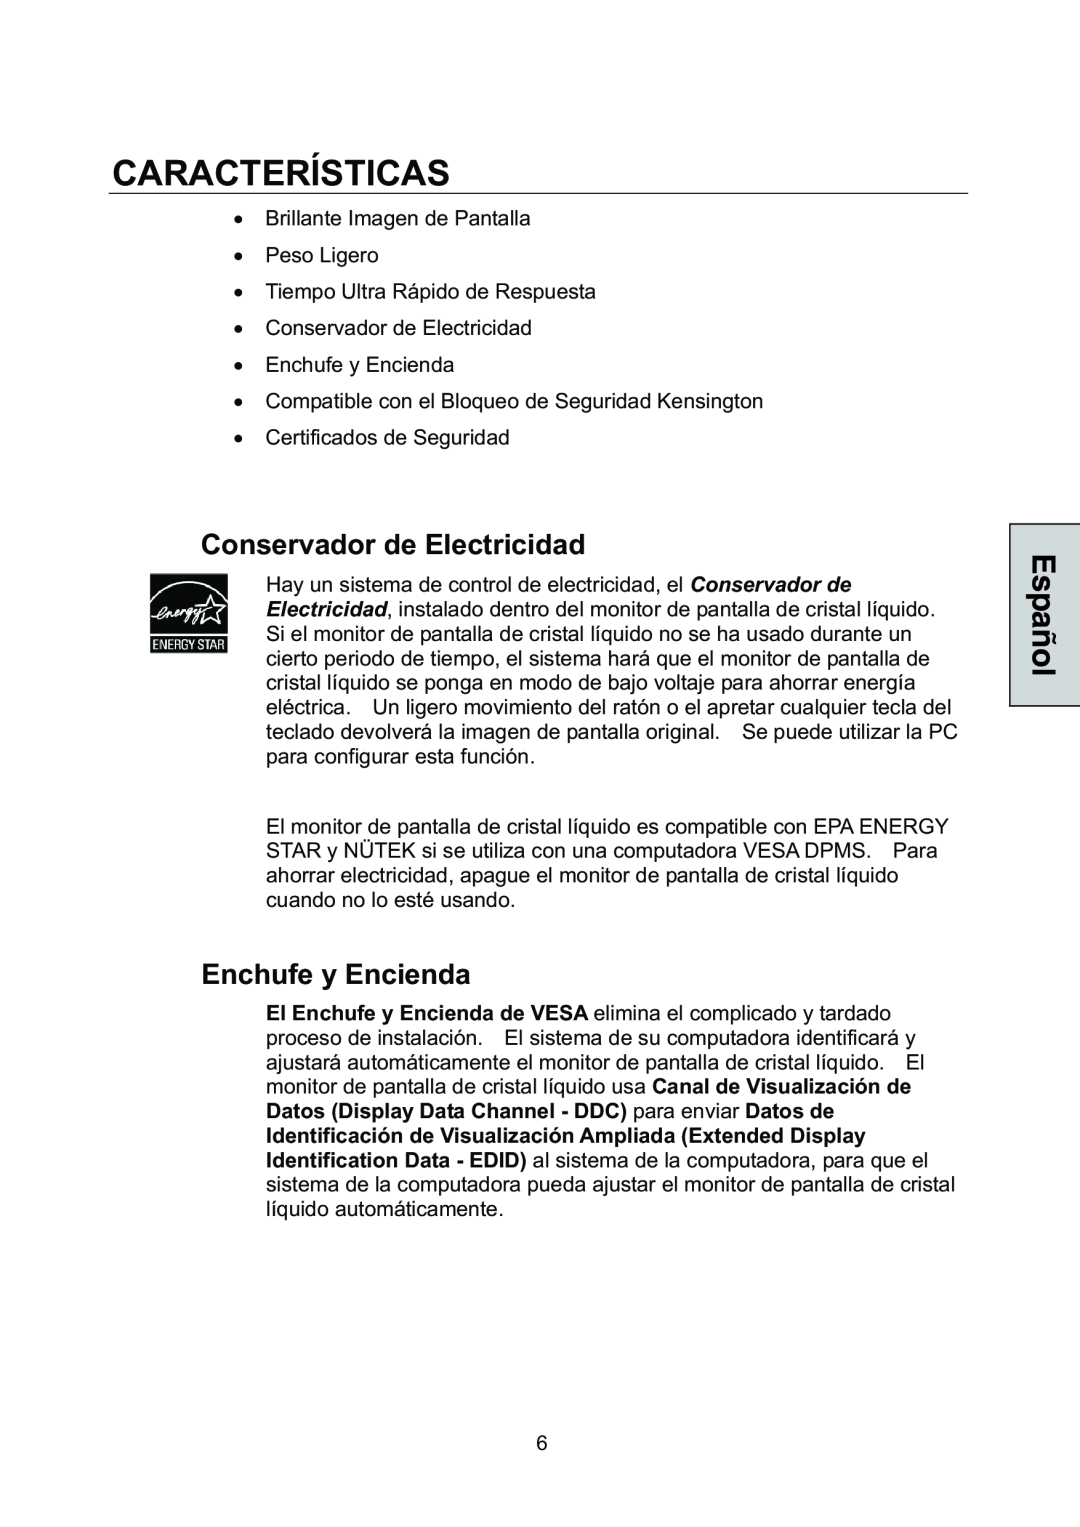 Westinghouse L1928NV manual Características, Conservador de Electricidad, Enchufe y Encienda 